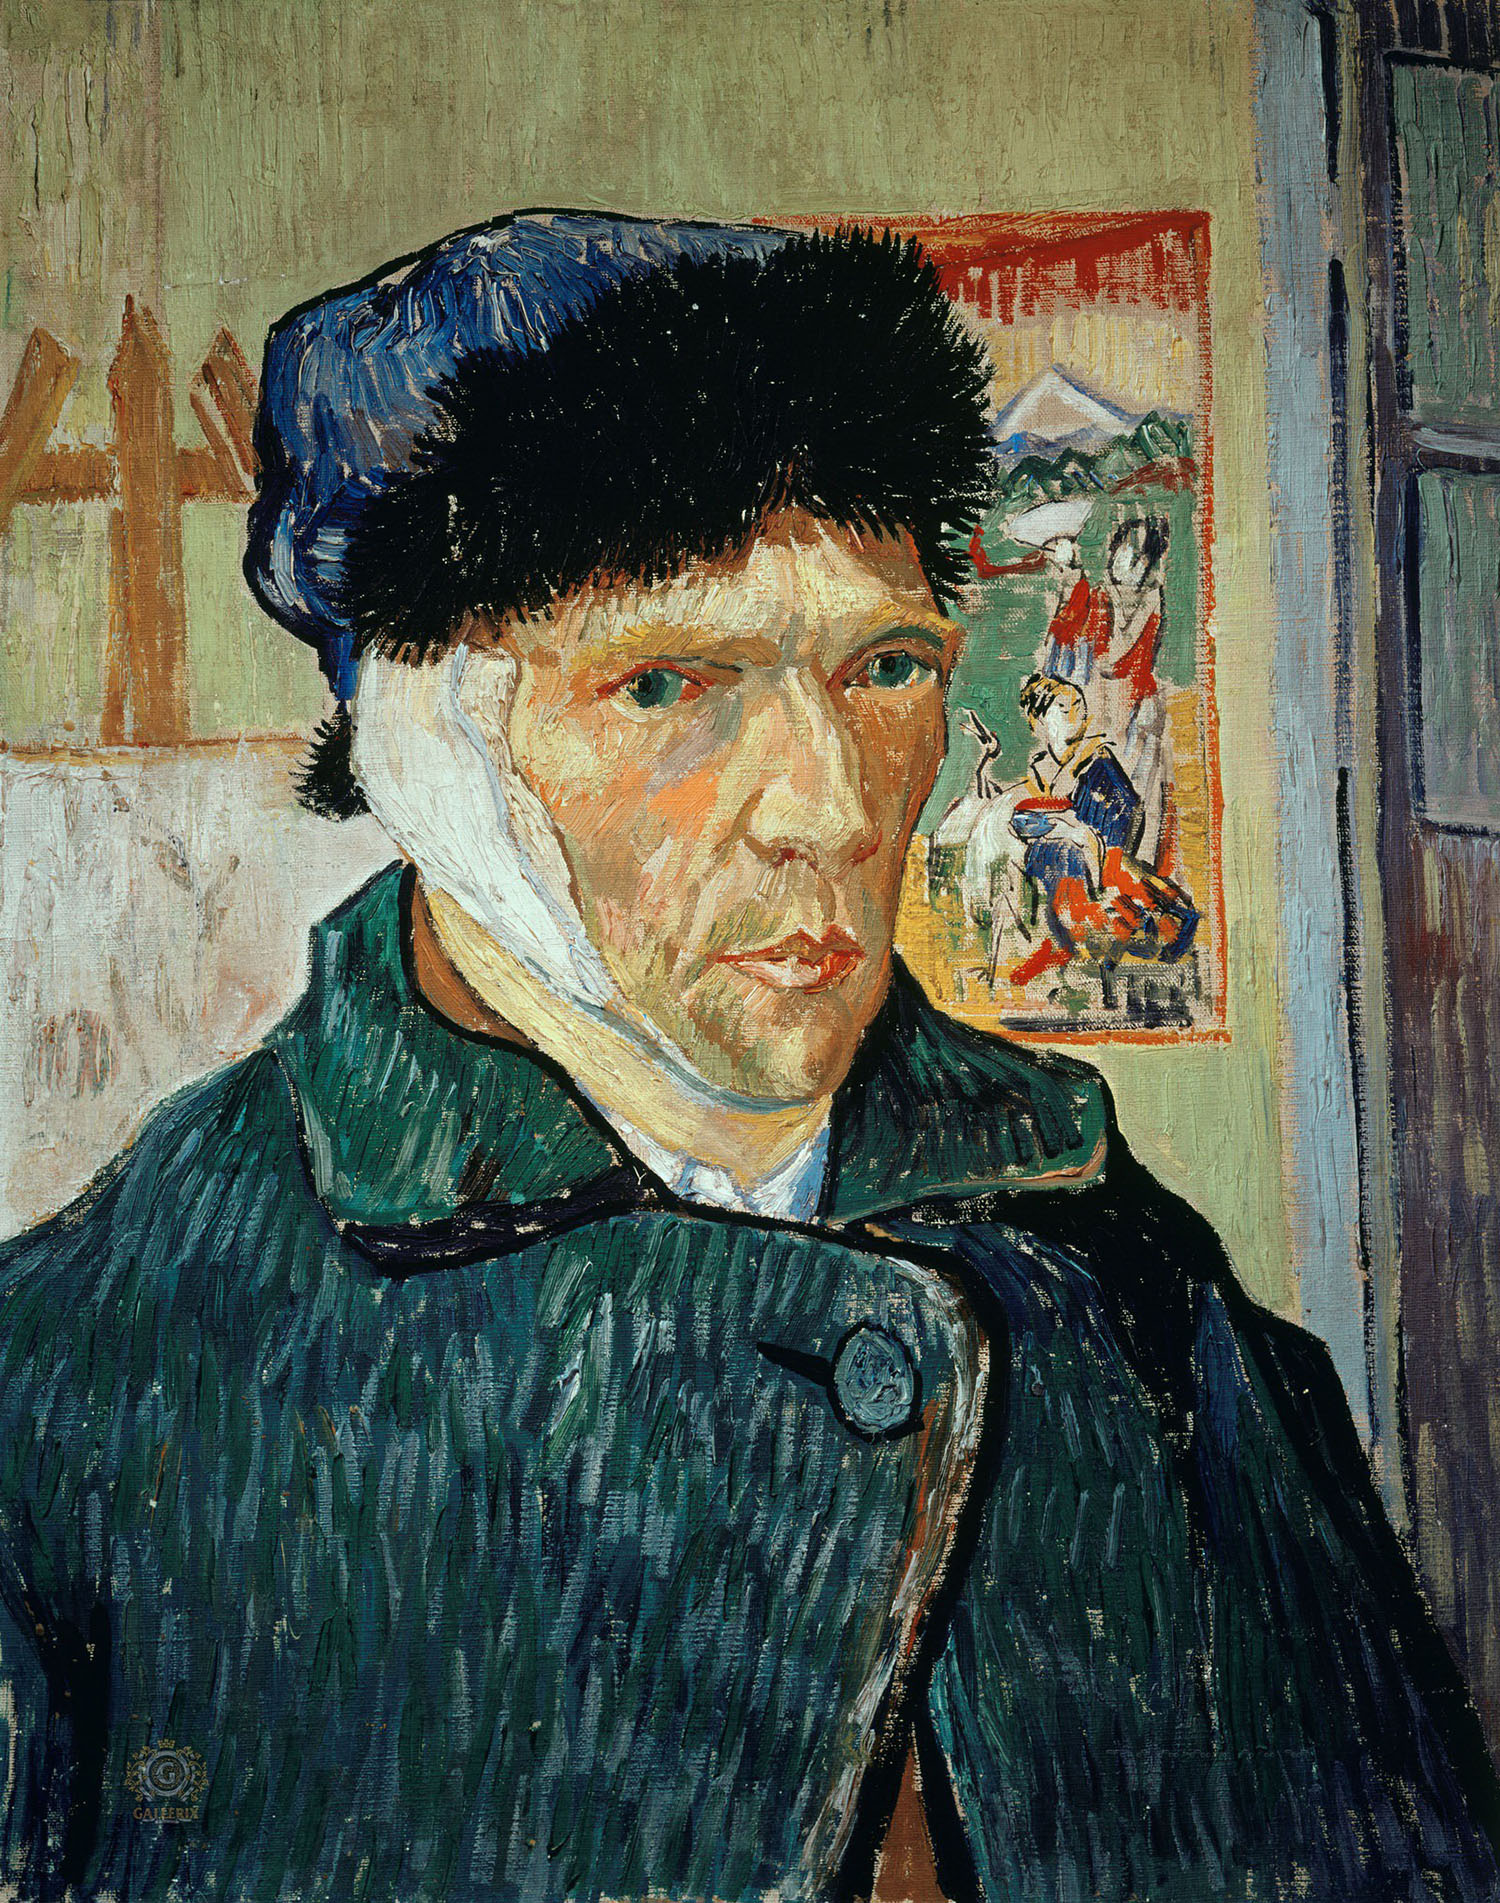 Винсент Ван Гог. "Автопортрет с отрезанным ухом". 1889. Галерея института искусств Курто, Лондон.